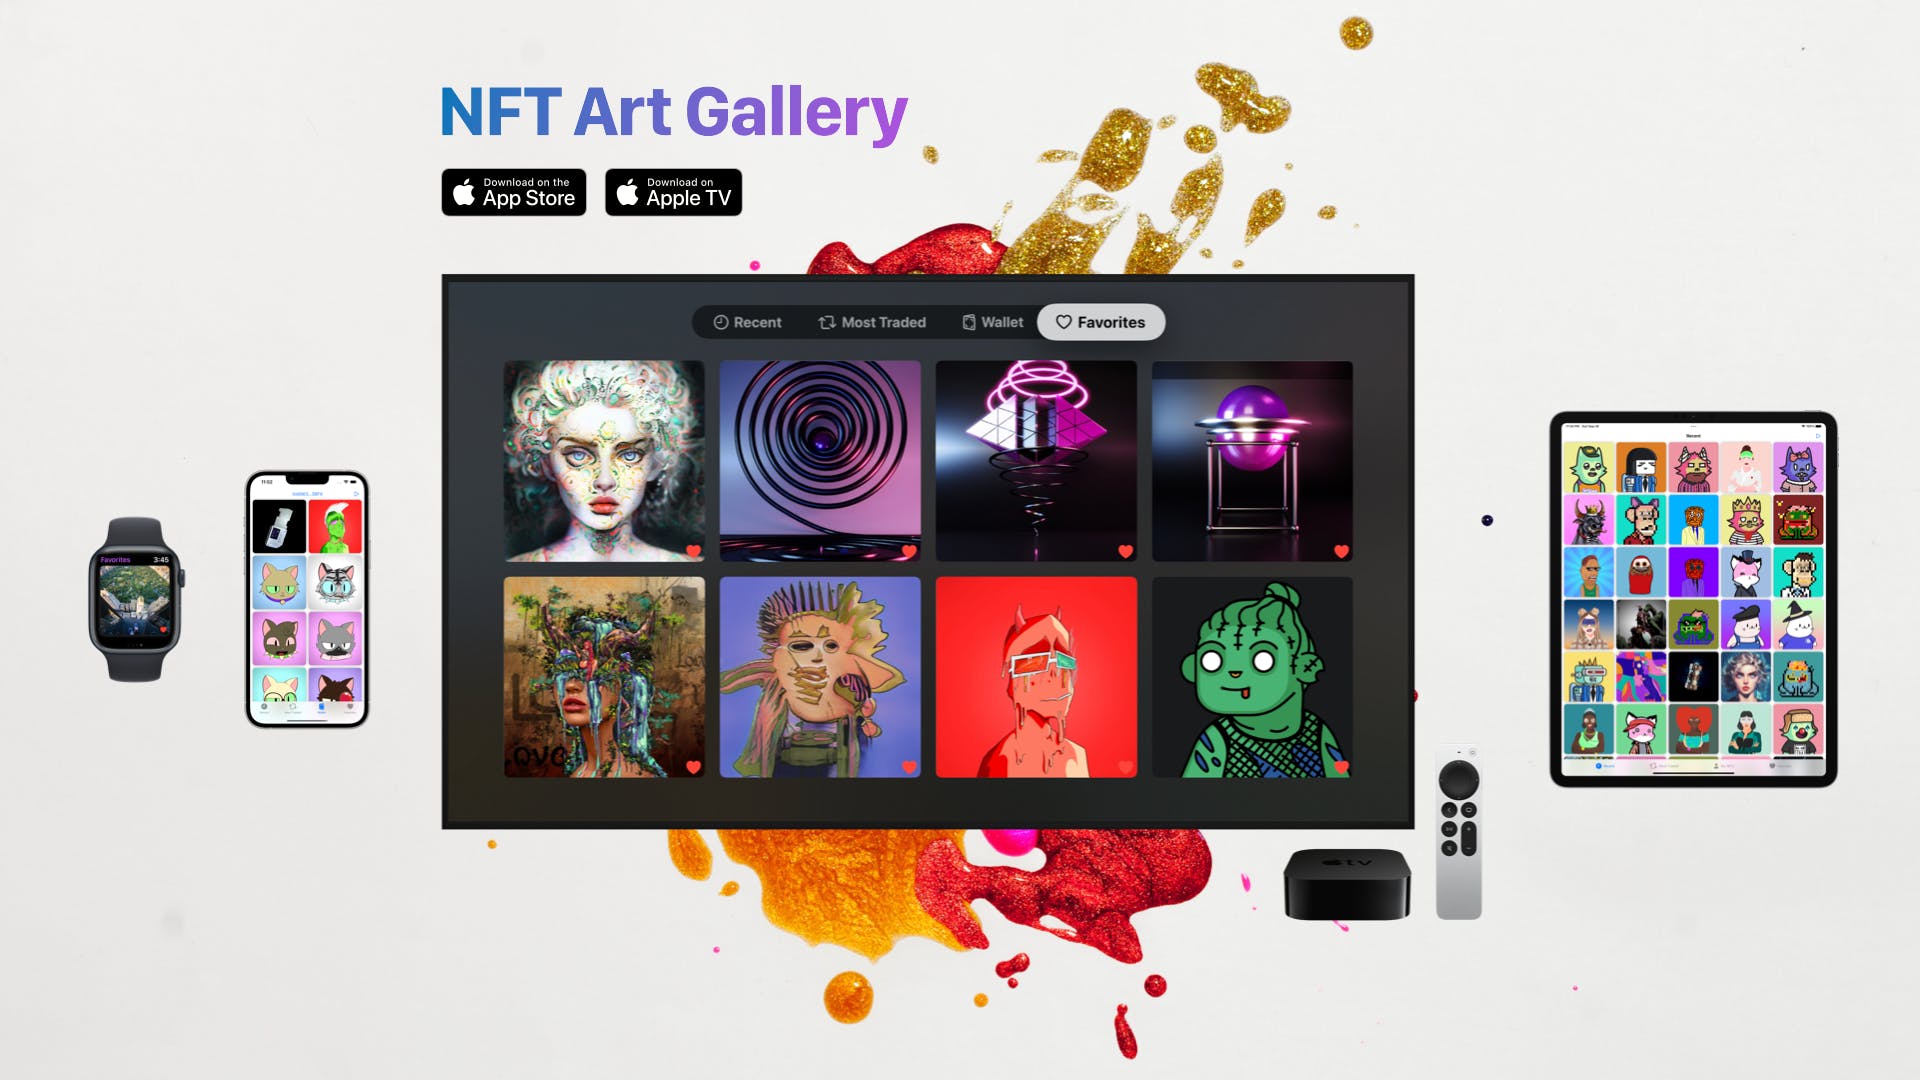 NFT Art Gallery media 2